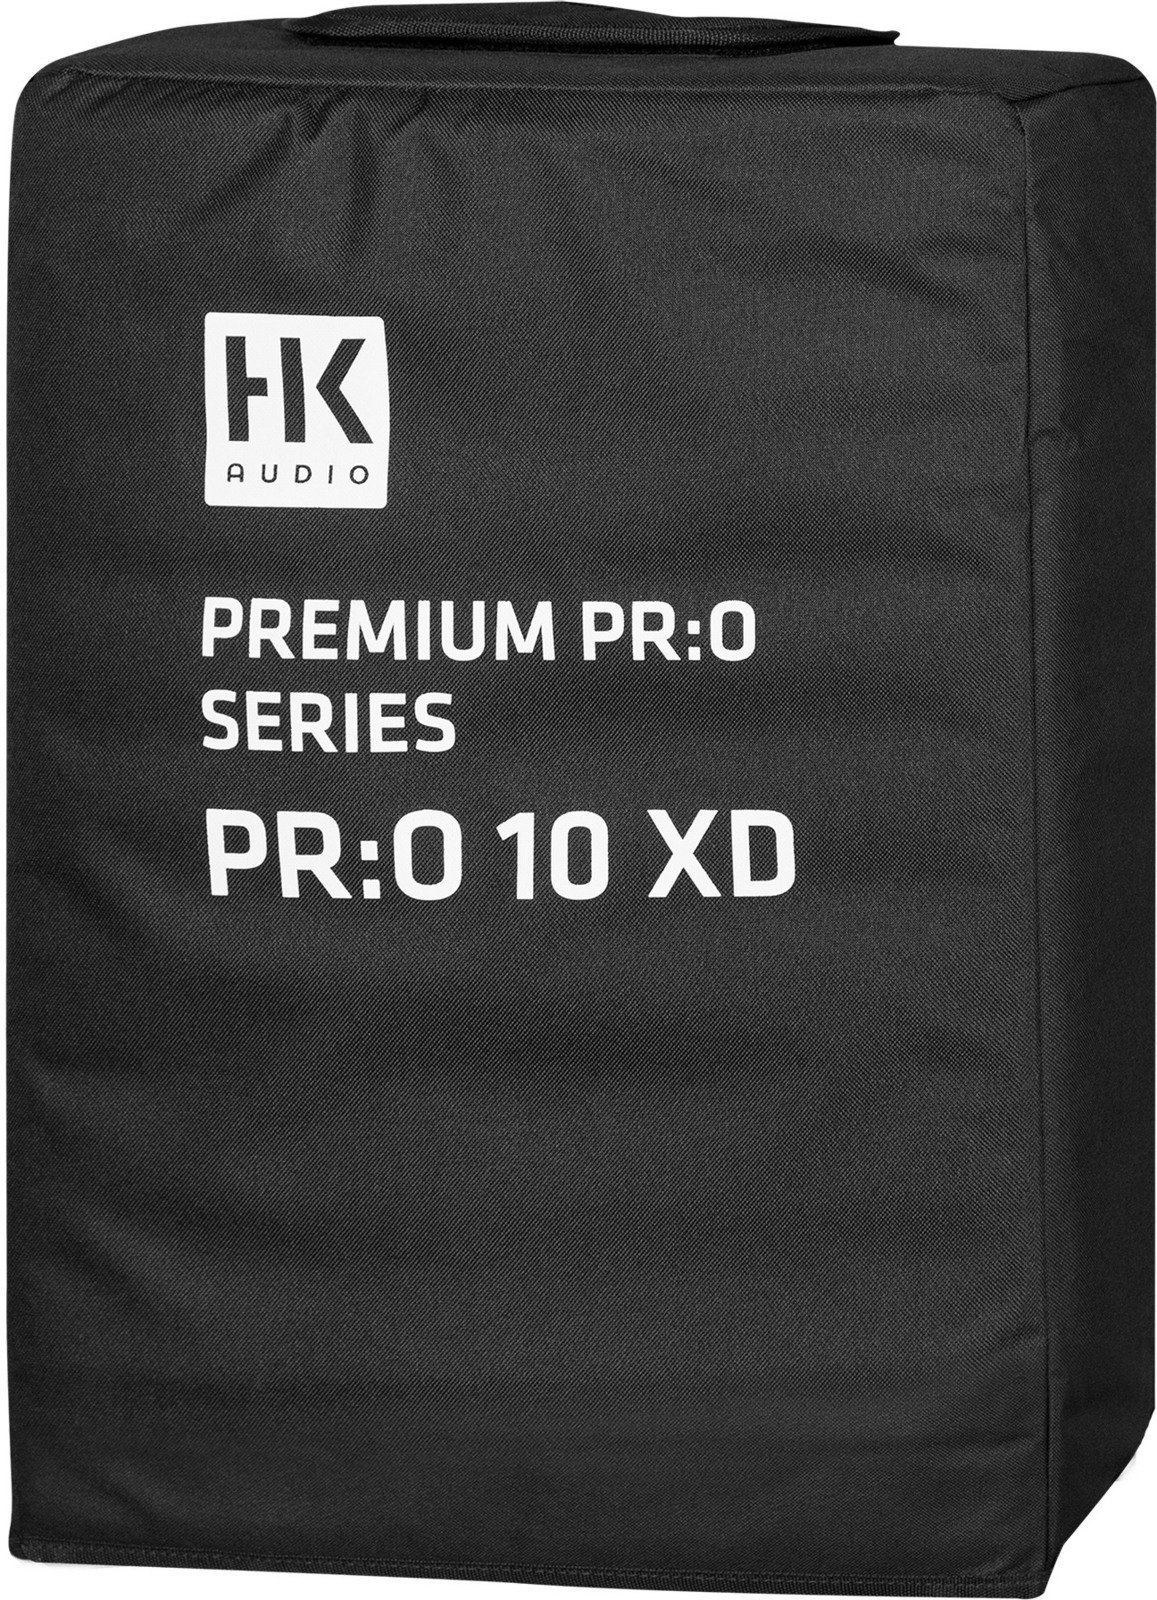 Bolsa para altavoces HK Audio PR:O 10 XD Cover